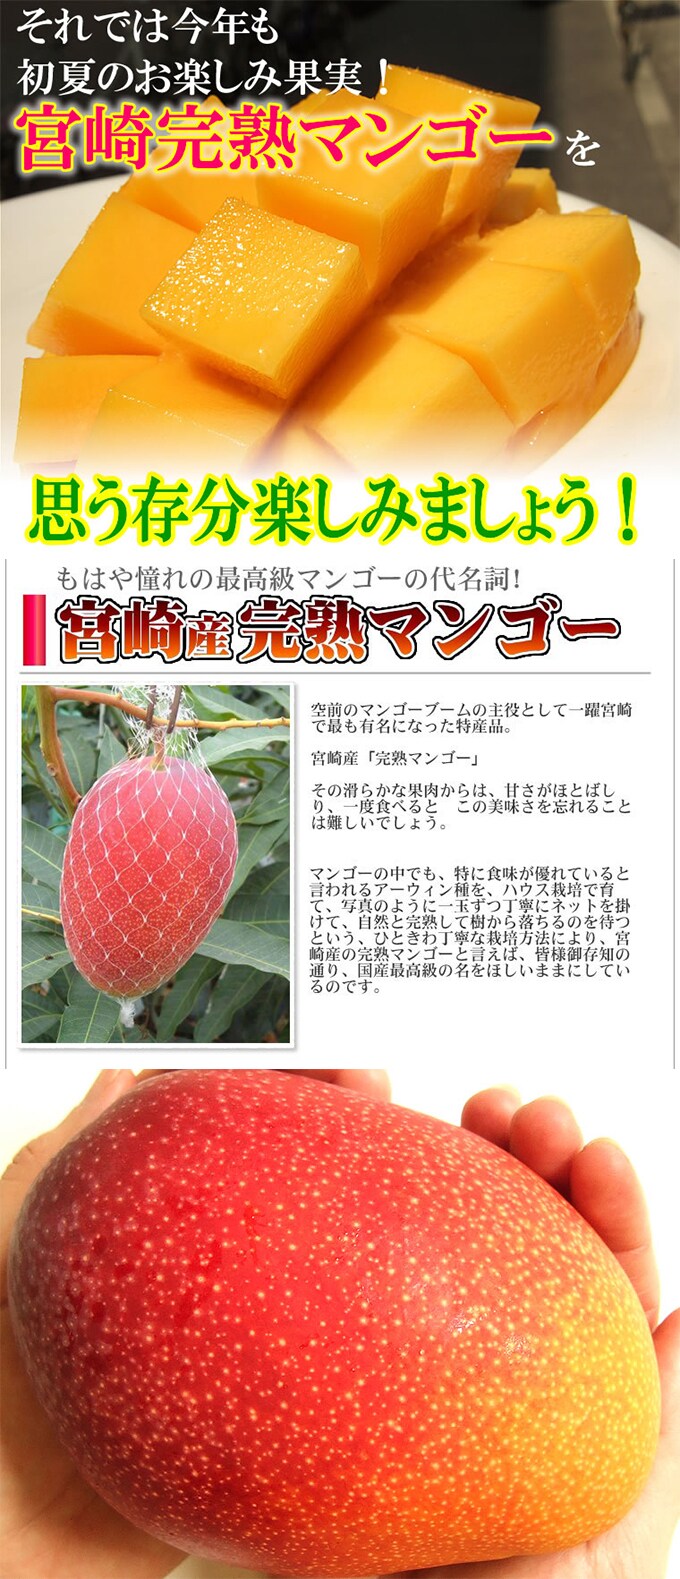 爆買い100%新品宮崎県産 完熟マンゴー 2kg パック り ヤマト配送 果物